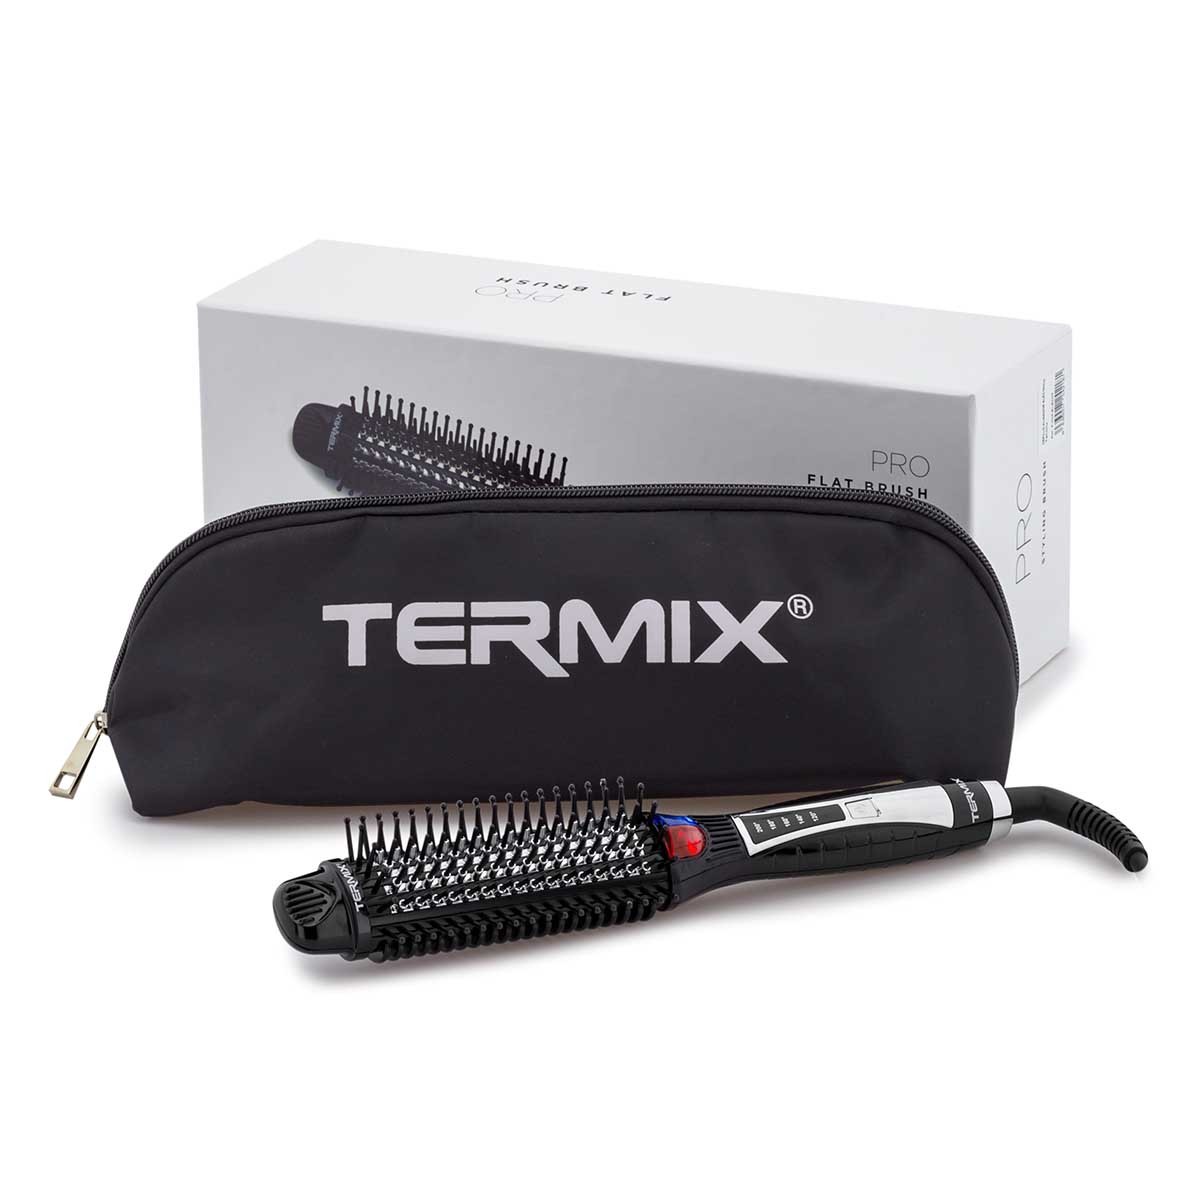 Termix Cepillo redondo Evolution XL 0.906 in, 1.2 in más largo- Cepillo de  pelo con fibras ionizadas y una superficie extra del 25% para un secado más